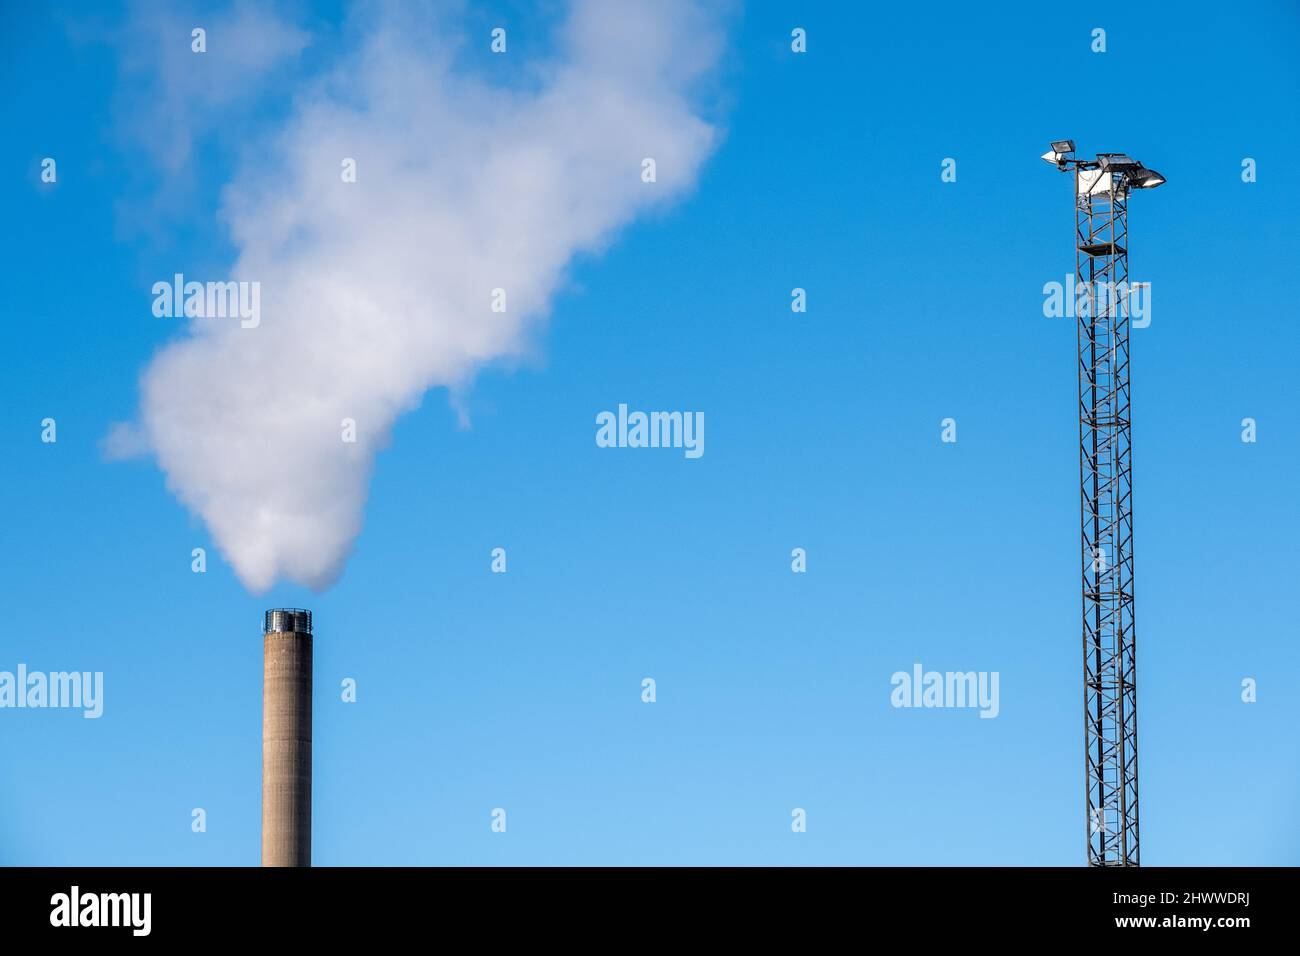 Helsinki / Finnland - 26. FEBRUAR 2022: Hoher, heller Mast und ein Rauchgassack vor einem strahlend blauen Himmel Stockfoto